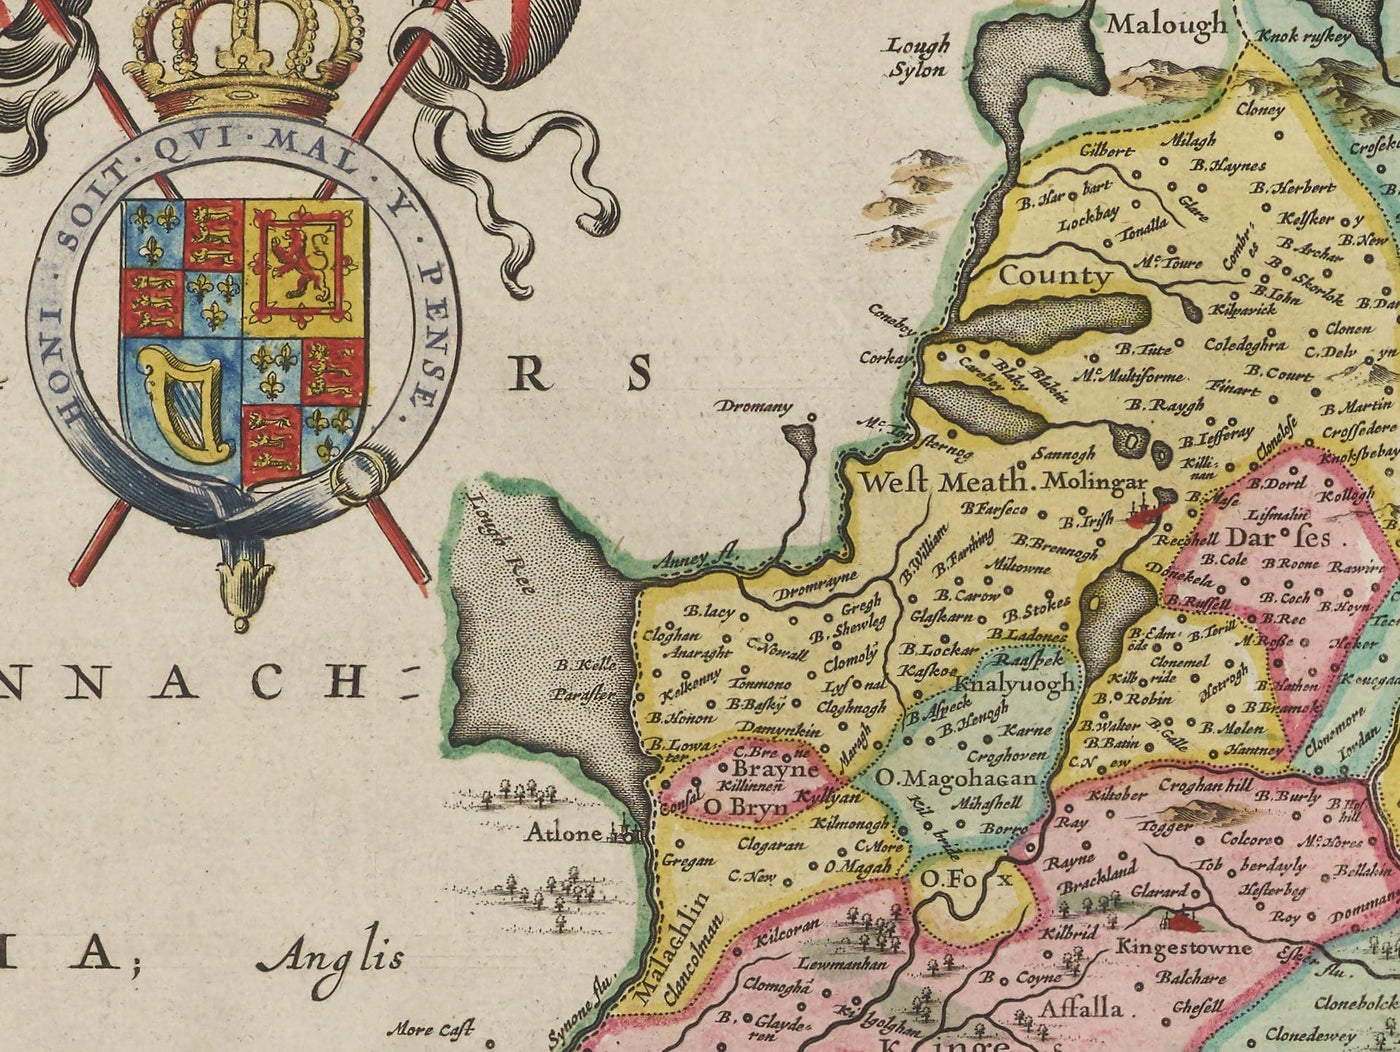 Mapa antiguo de Leinster, Irlanda en 1665 por Joan Blaeu - Condado de Dublín, Kilkenny, Meath, Drogheda Swords, Waterford, East Eire